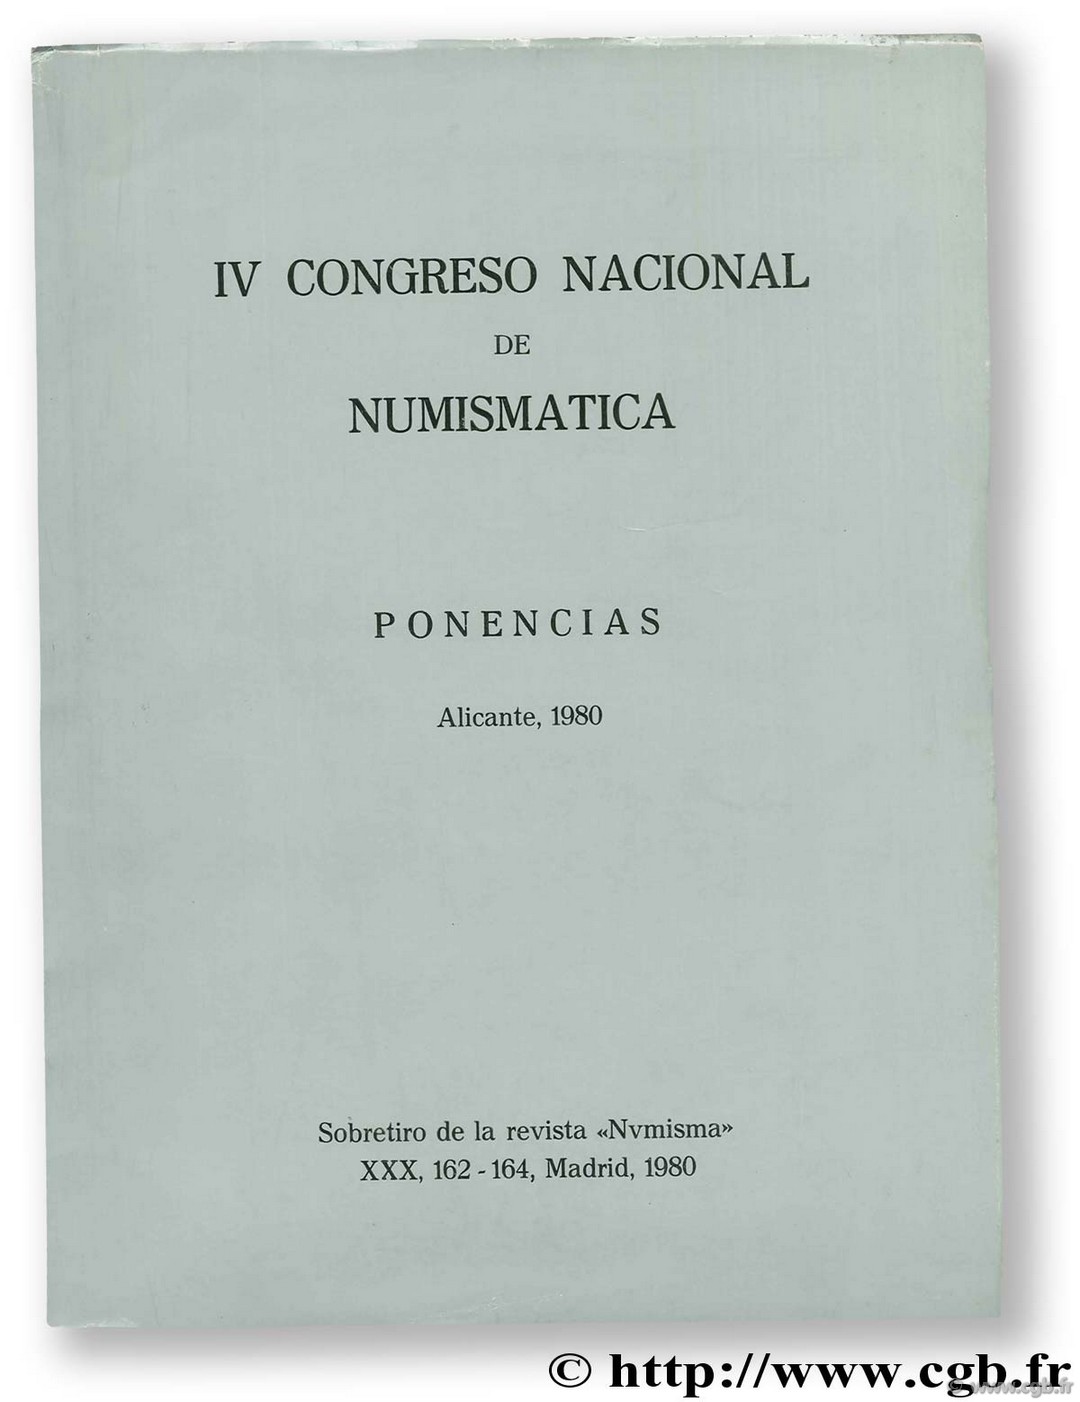 IV Congreso Nacional de numismatica. Ponencias. Alicante, 1980 